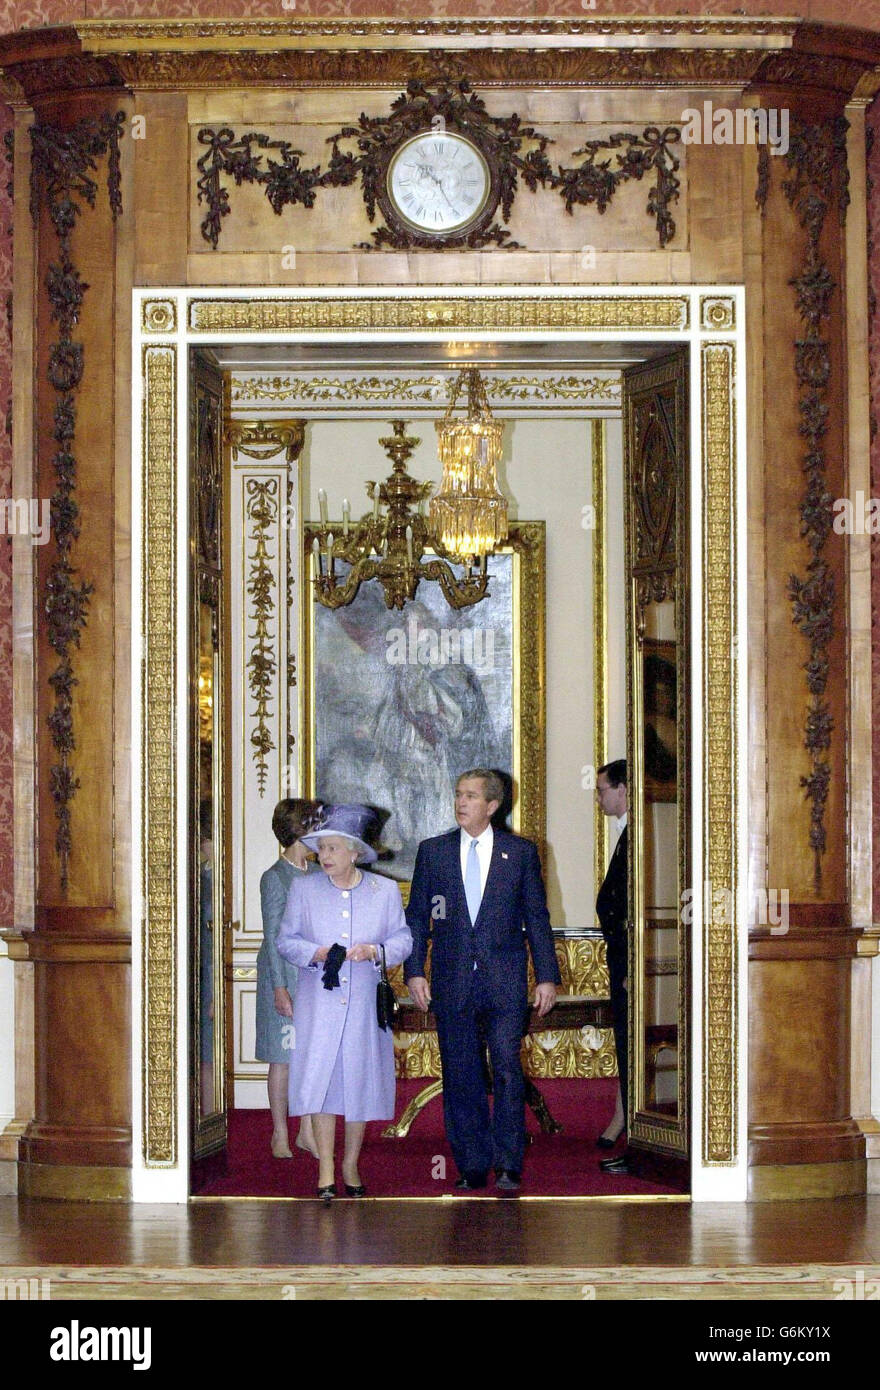 La reine Elizabeth II accompagne le président américain George Bush à son entrée dans la galerie de la reine au palais de Buckingham, au début de la visite d'État du président en Grande-Bretagne. Plus tard, M. Bush a prononcé un discours à la salle de banquet de Whitehall et a visité l'ambassade des États-Unis. Banque D'Images